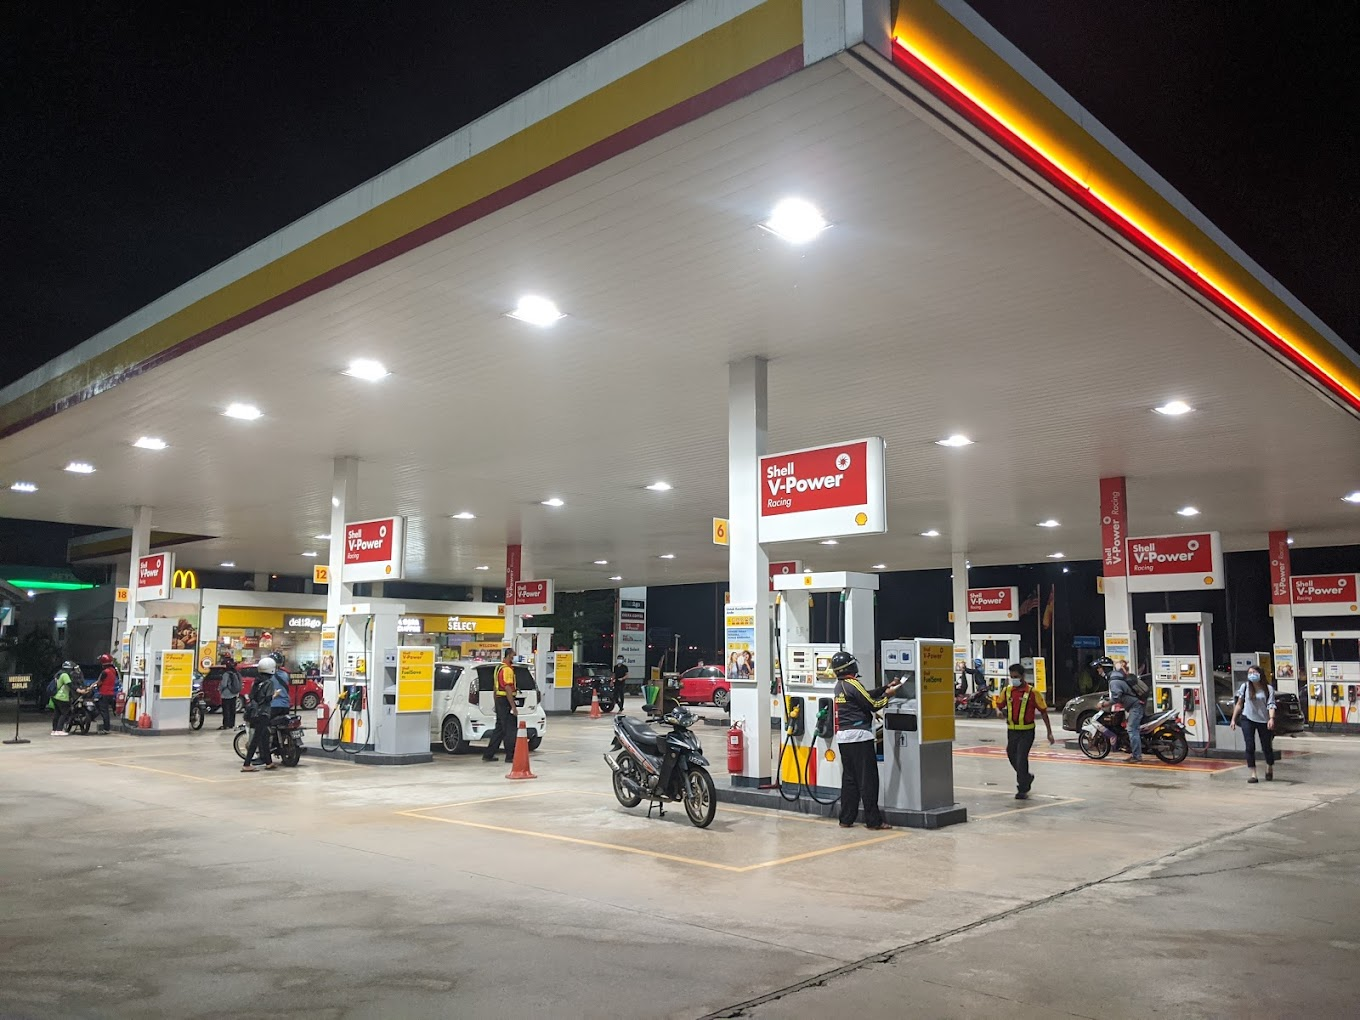 Batu tiga shell petrol station along federal highway